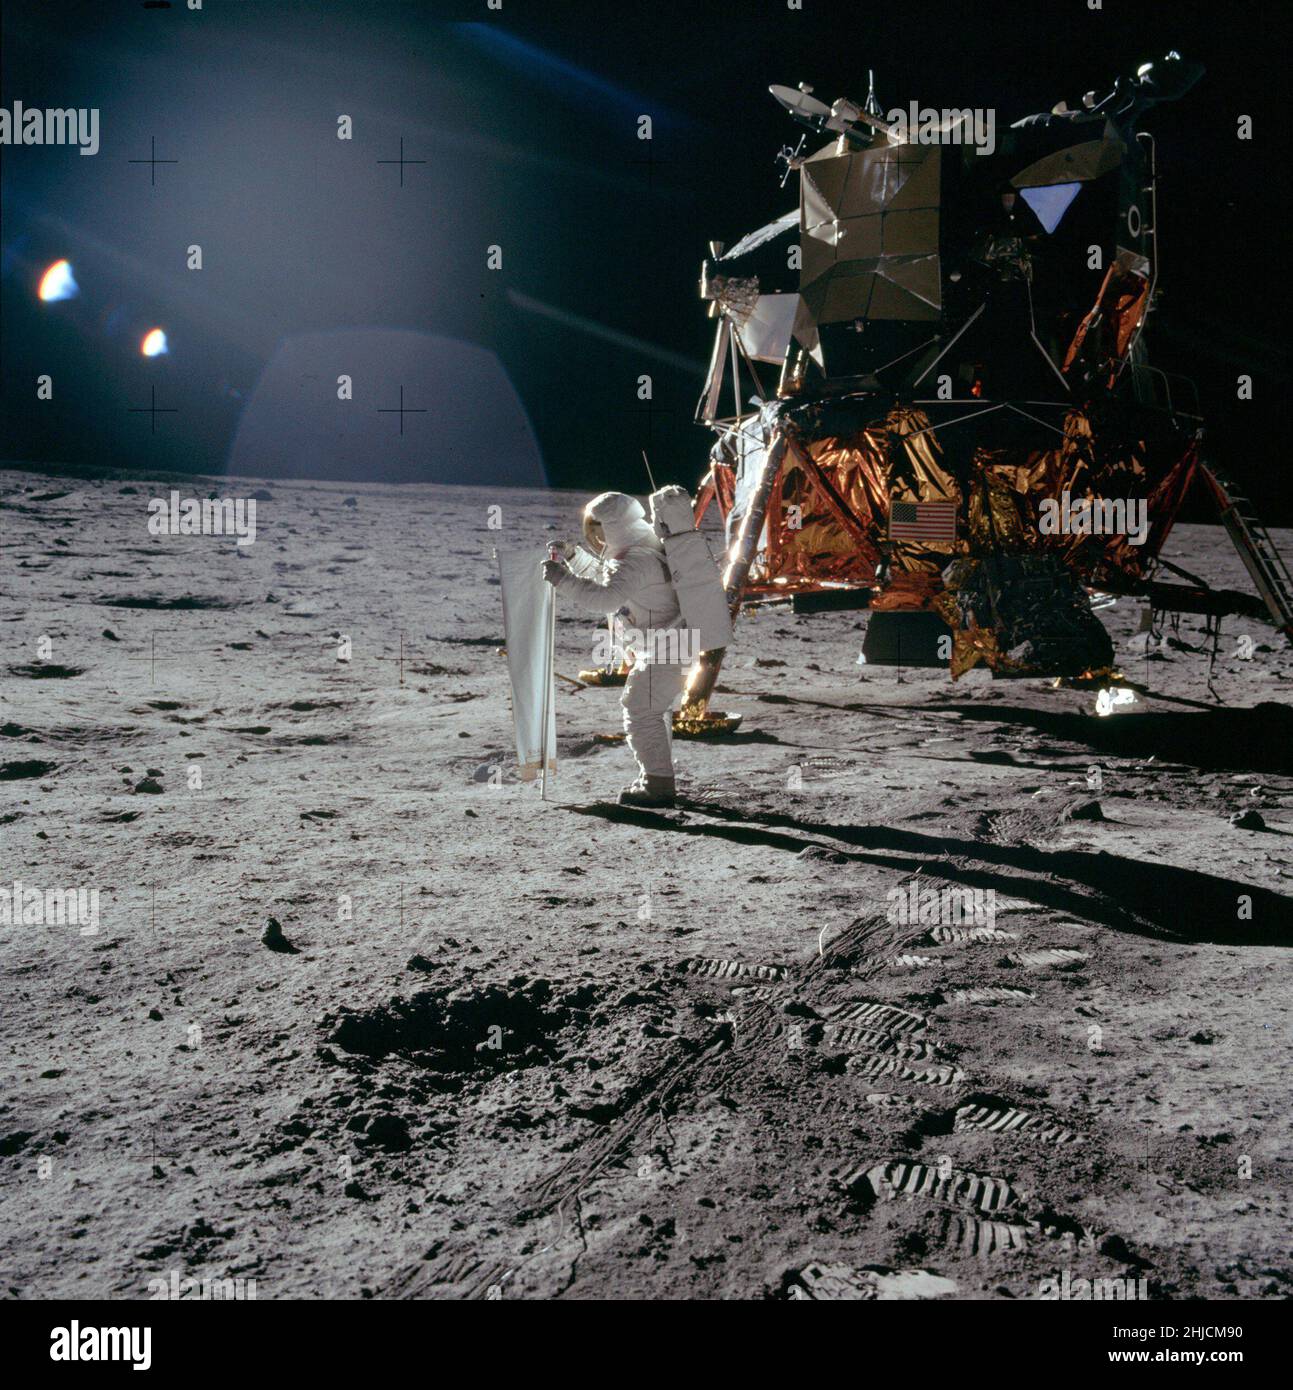 Die Apollo-11-Astronauten Neil Armstrong und Edwin 'Buzz' Aldrin führten am 20. Juli 1969 die erste bemannte Mondlandung durch. Hier setzt Buzz den Solar Wind Collector ein, ein Folienblatt, das er auf die Sonne zeigt. Am Ende der EVA, nachdem er den SWC etwa 1 Stunden und 17 Minuten lang der Sonne ausgesetzt hatte, Buzz wird die Folie zusammenrollen und in einen Beutel packen, um sie auf der Erde zu analysieren. Beachten Sie den beträchtlichen Abstand zwischen der Unterseite der Glocke des Abfahrmotors und der darunter liegenden Oberfläche. Stockfoto